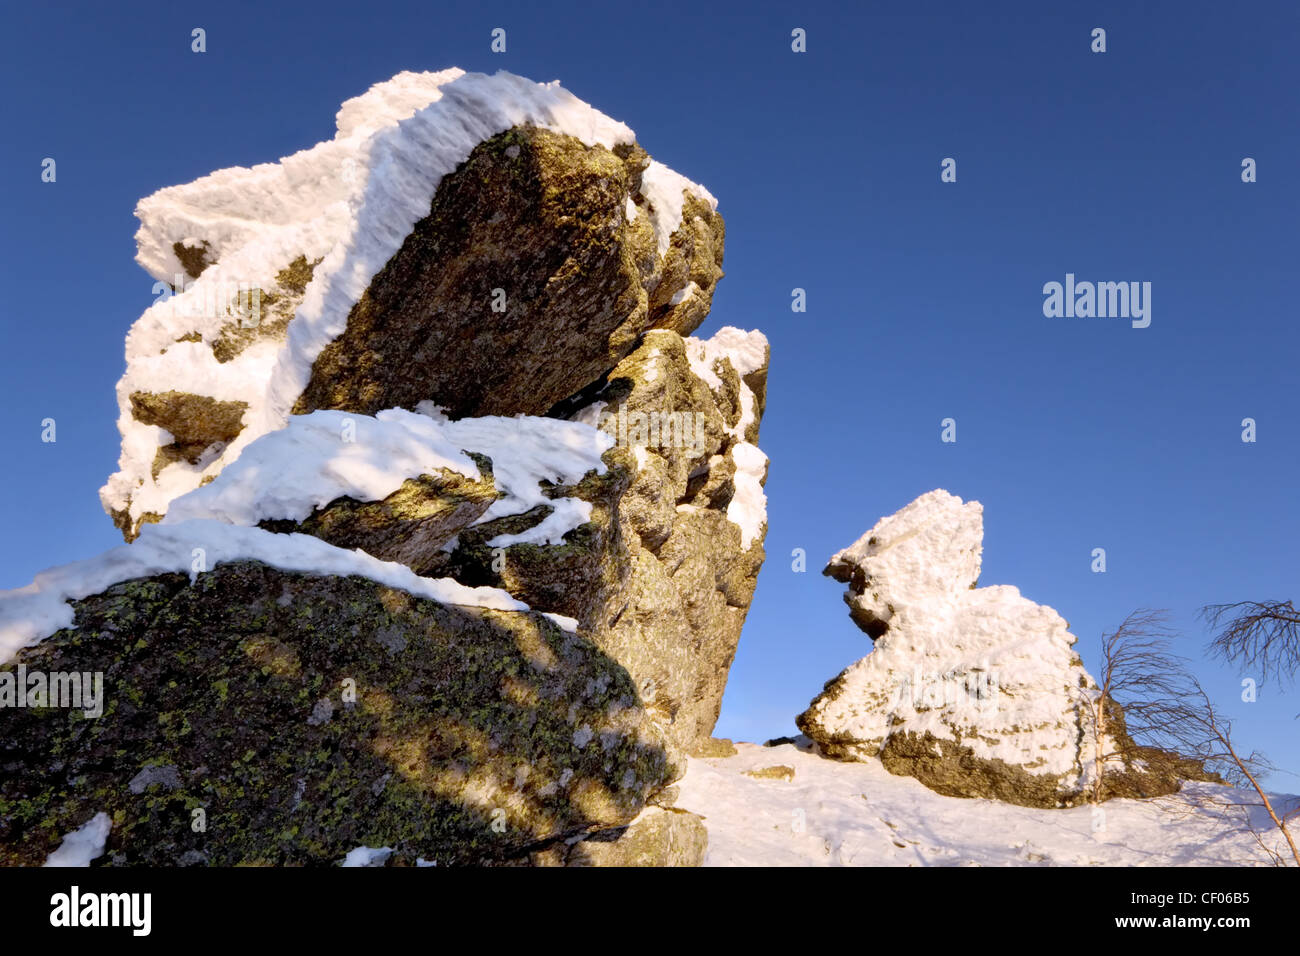 Les roches couvertes de neige sur fond de ciel bleu. La Sibérie. La taïga. Parc national Taganay. La Russie. Banque D'Images